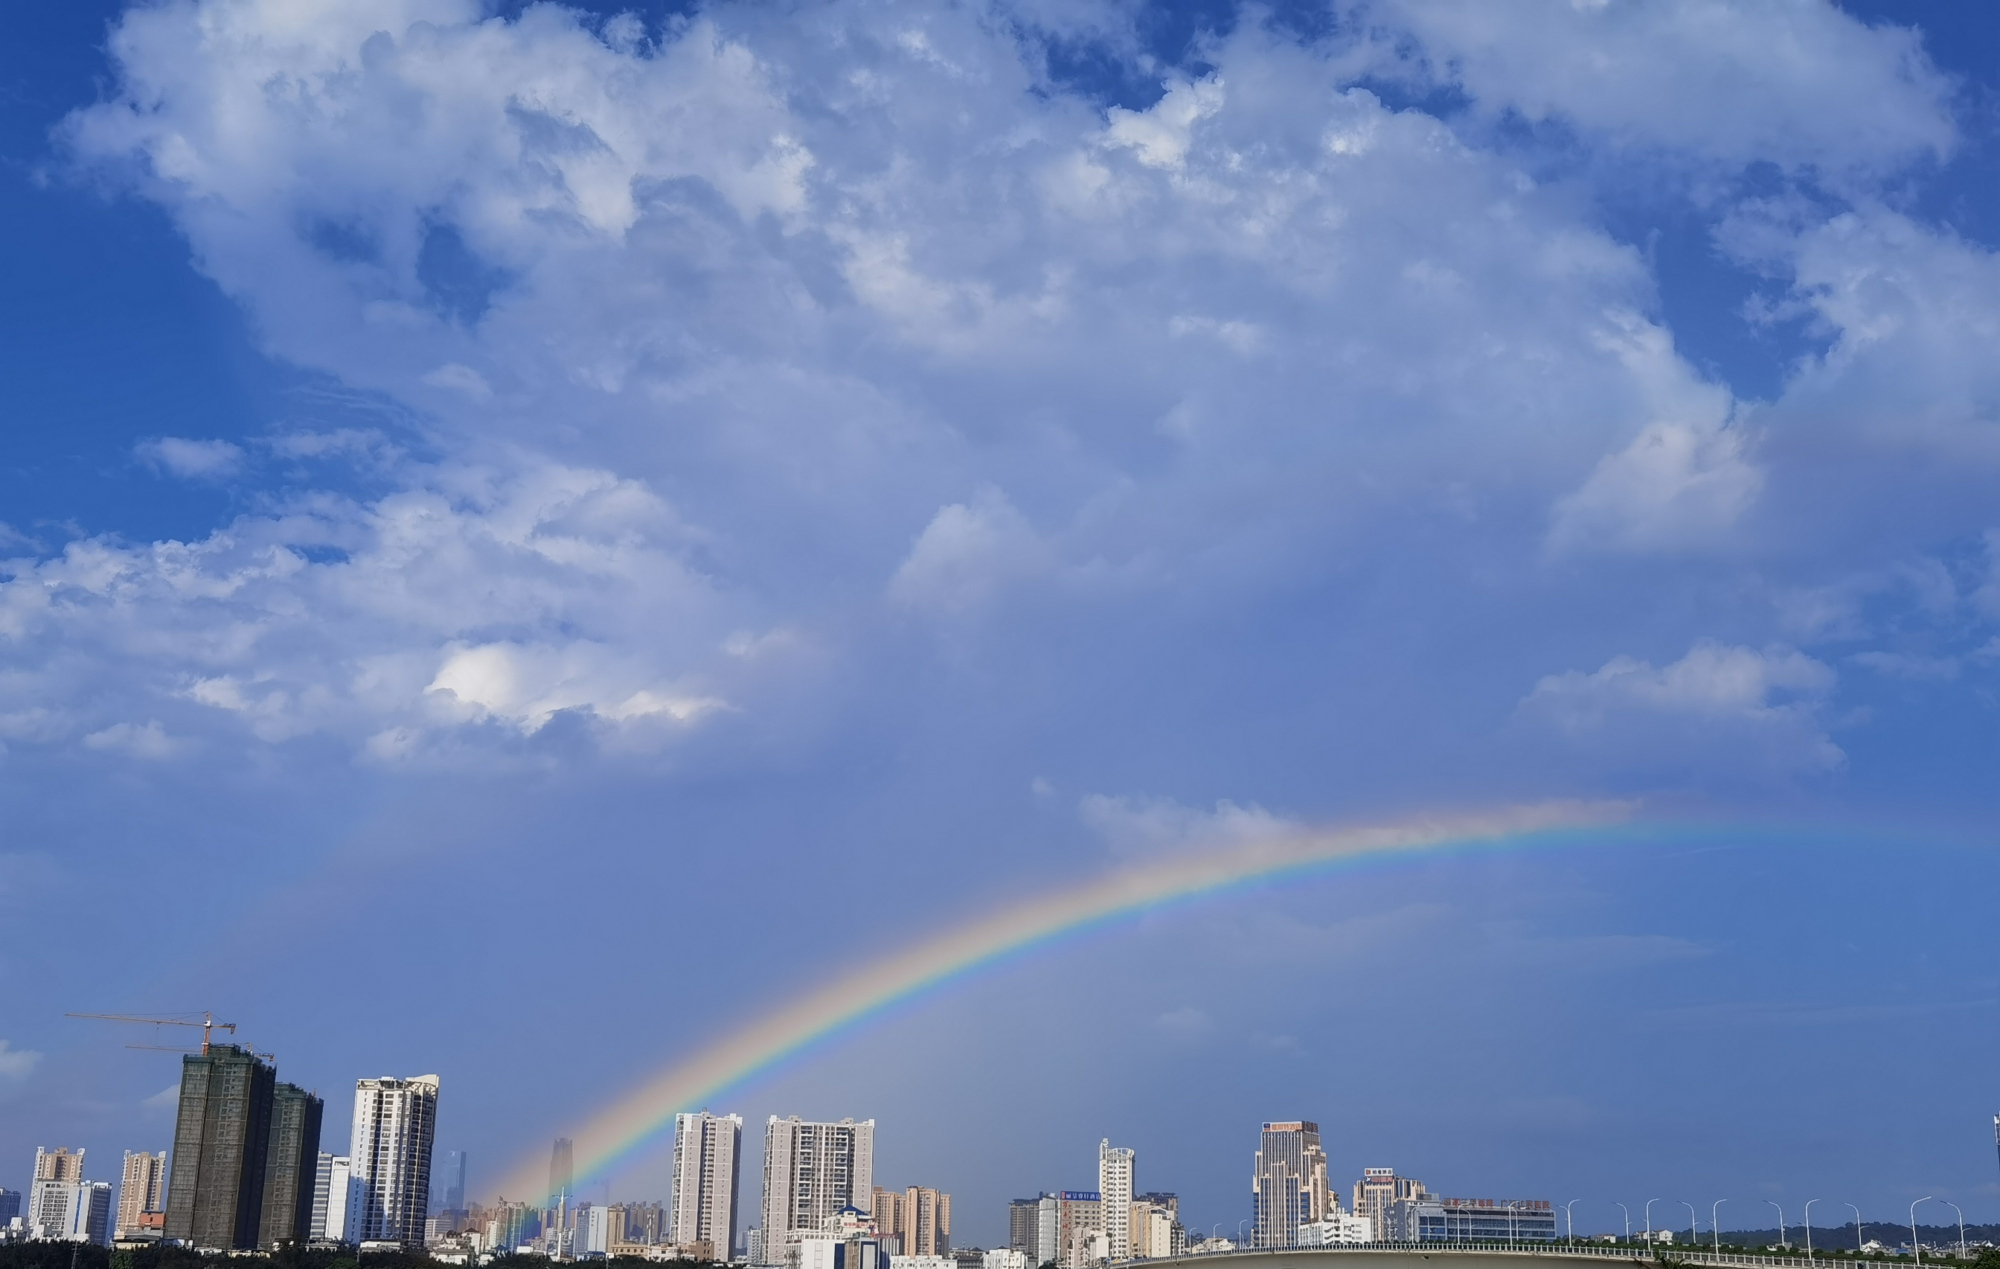 广西南宁:下雨过后的南宁,天空挂了一道靓丽的彩虹!